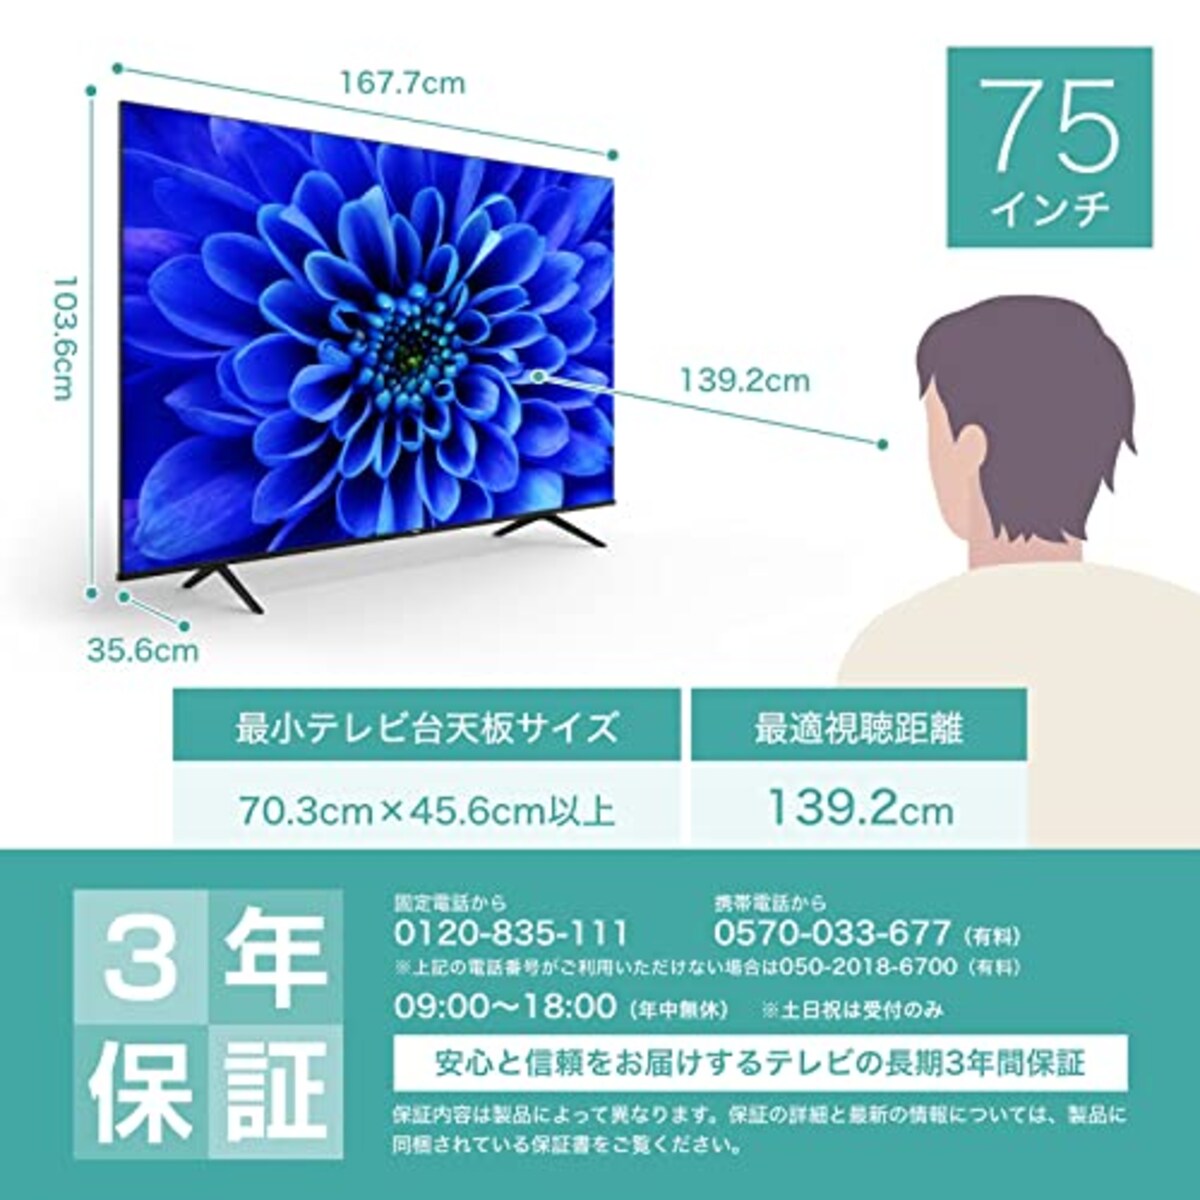  ハイセンス 75V型 4Kチューナー内蔵 液晶 テレビ 75E6G ネット動画対応 ADSパネル 3年保証画像2 